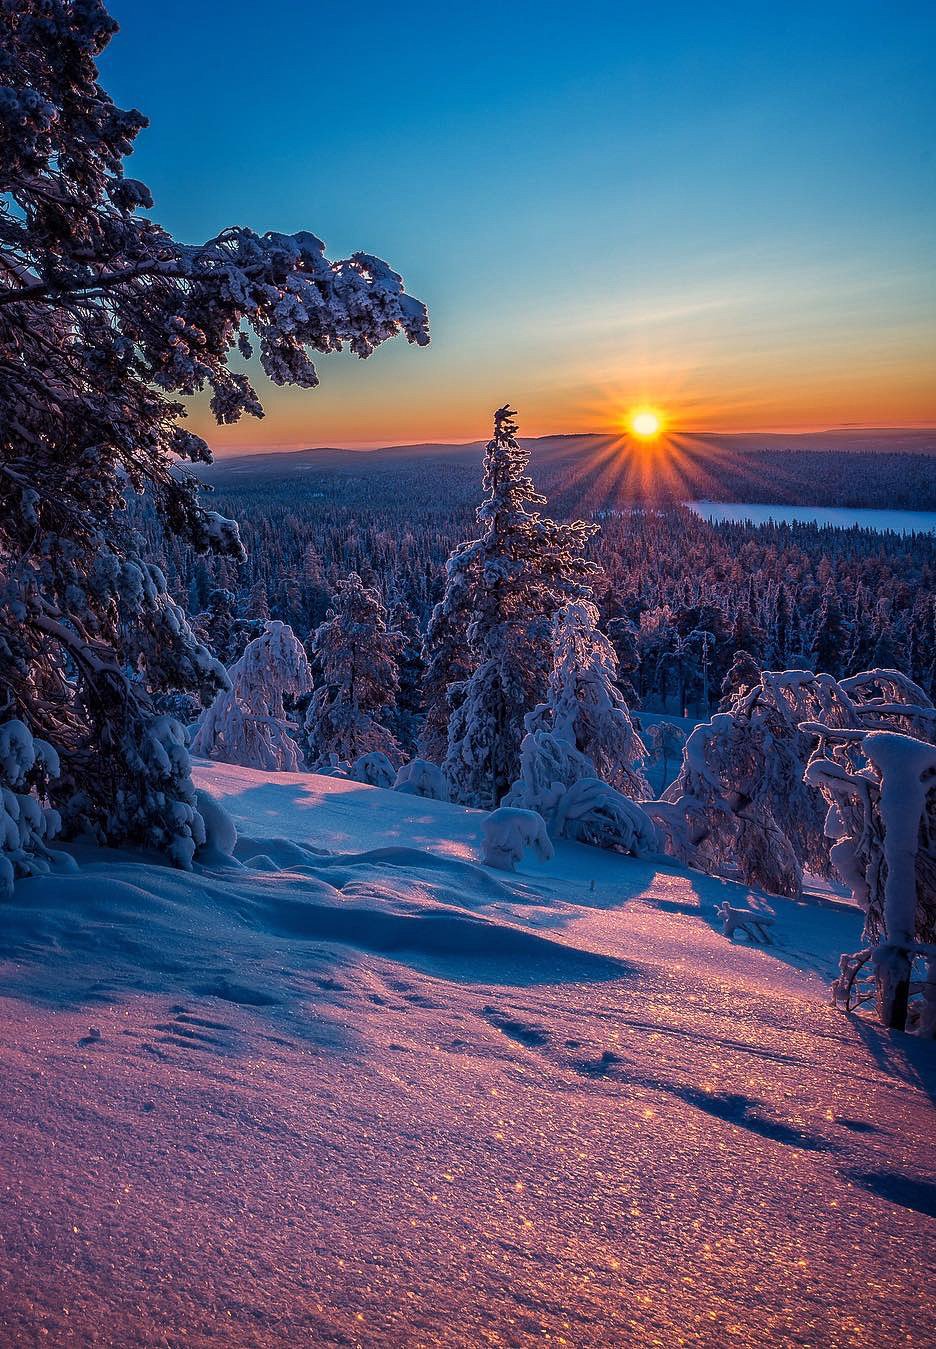 Красивые зимние картинки (63 фото)